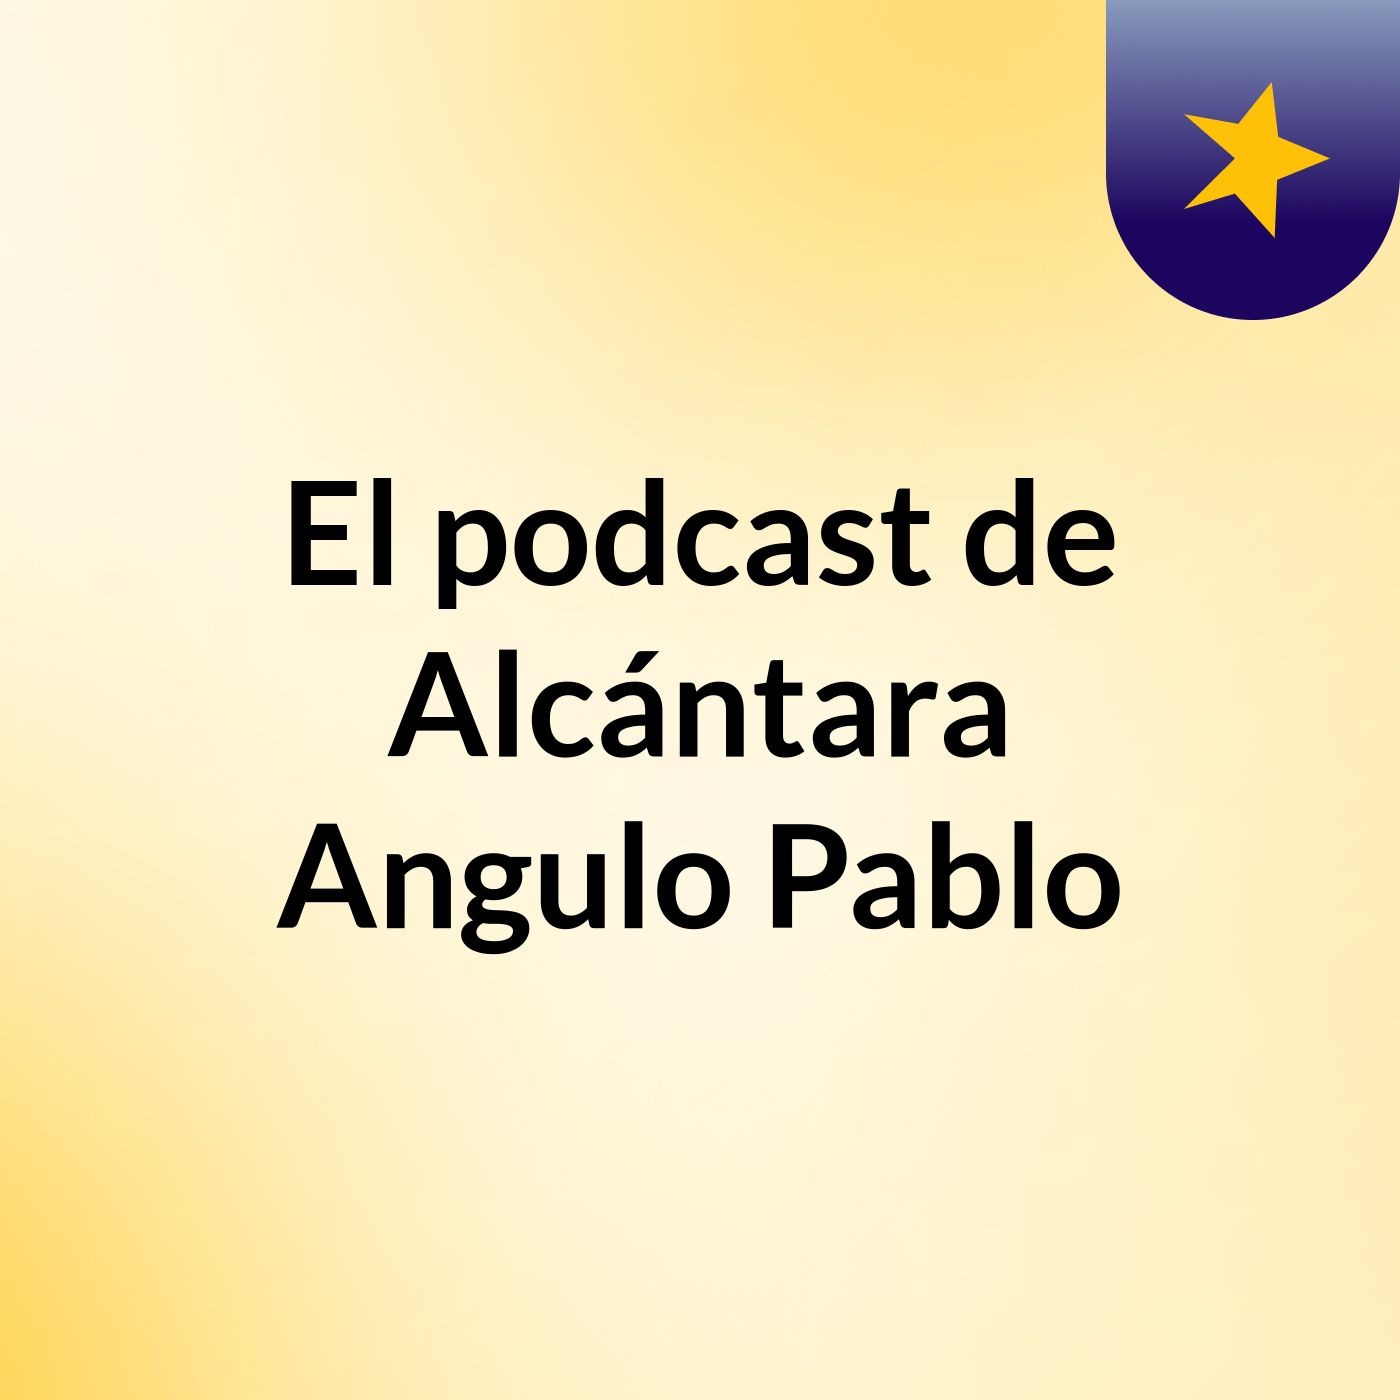 El podcast de Alcántara Angulo Pablo